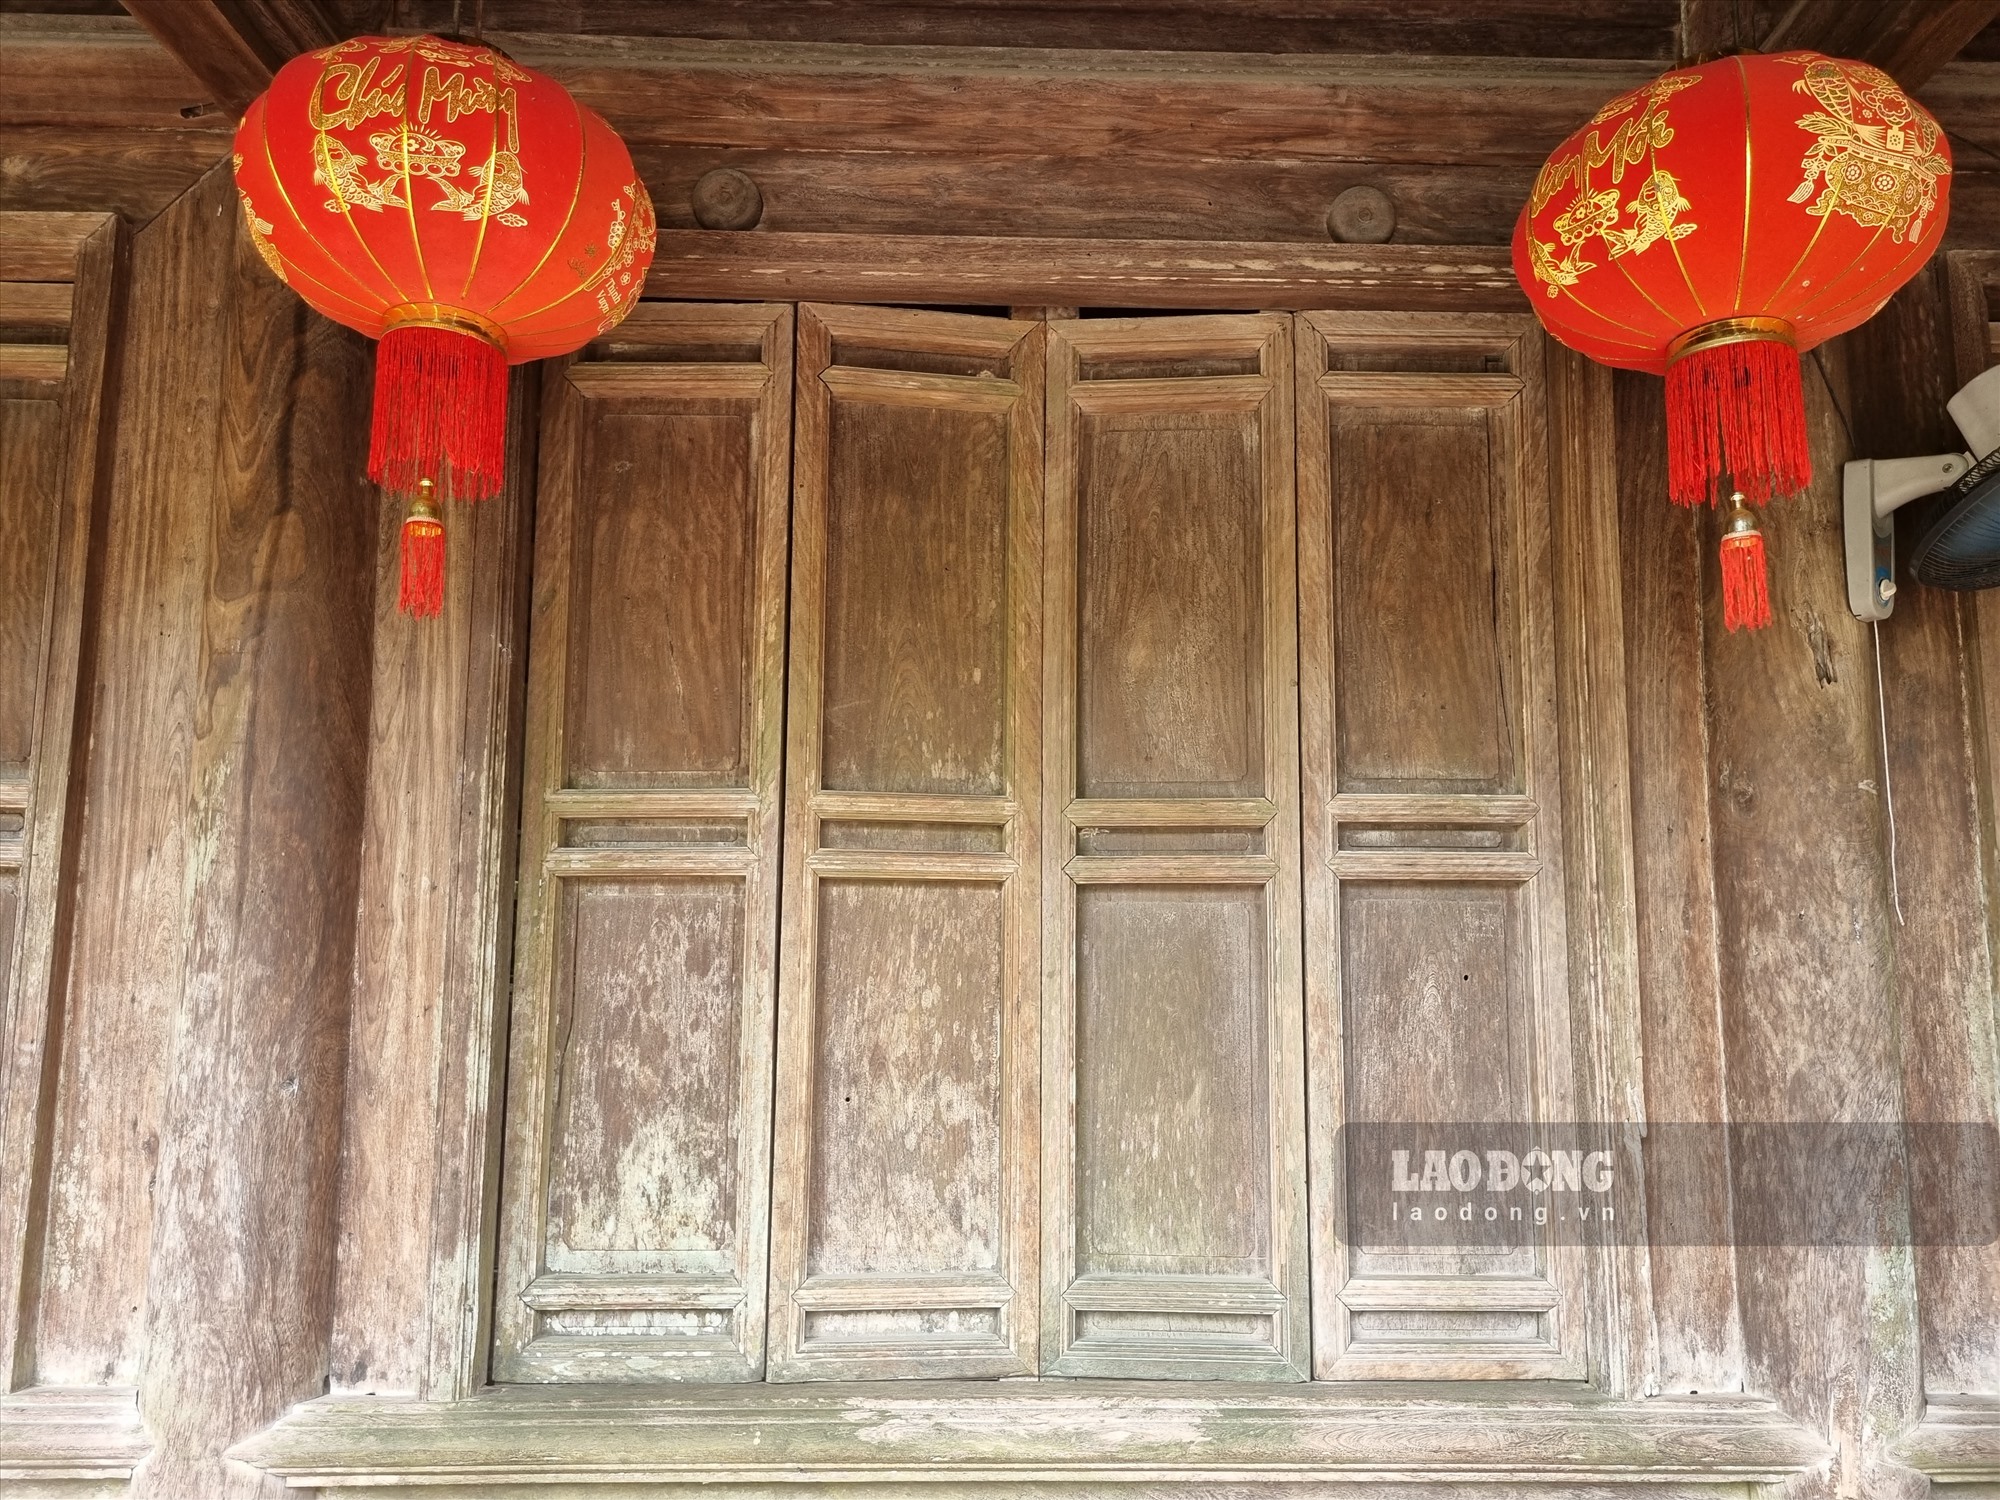 Chiêm ngưỡng ngôi nhà cổ hơn 150 tuổi giữ nguyên kiến trúc ở Thái Bình